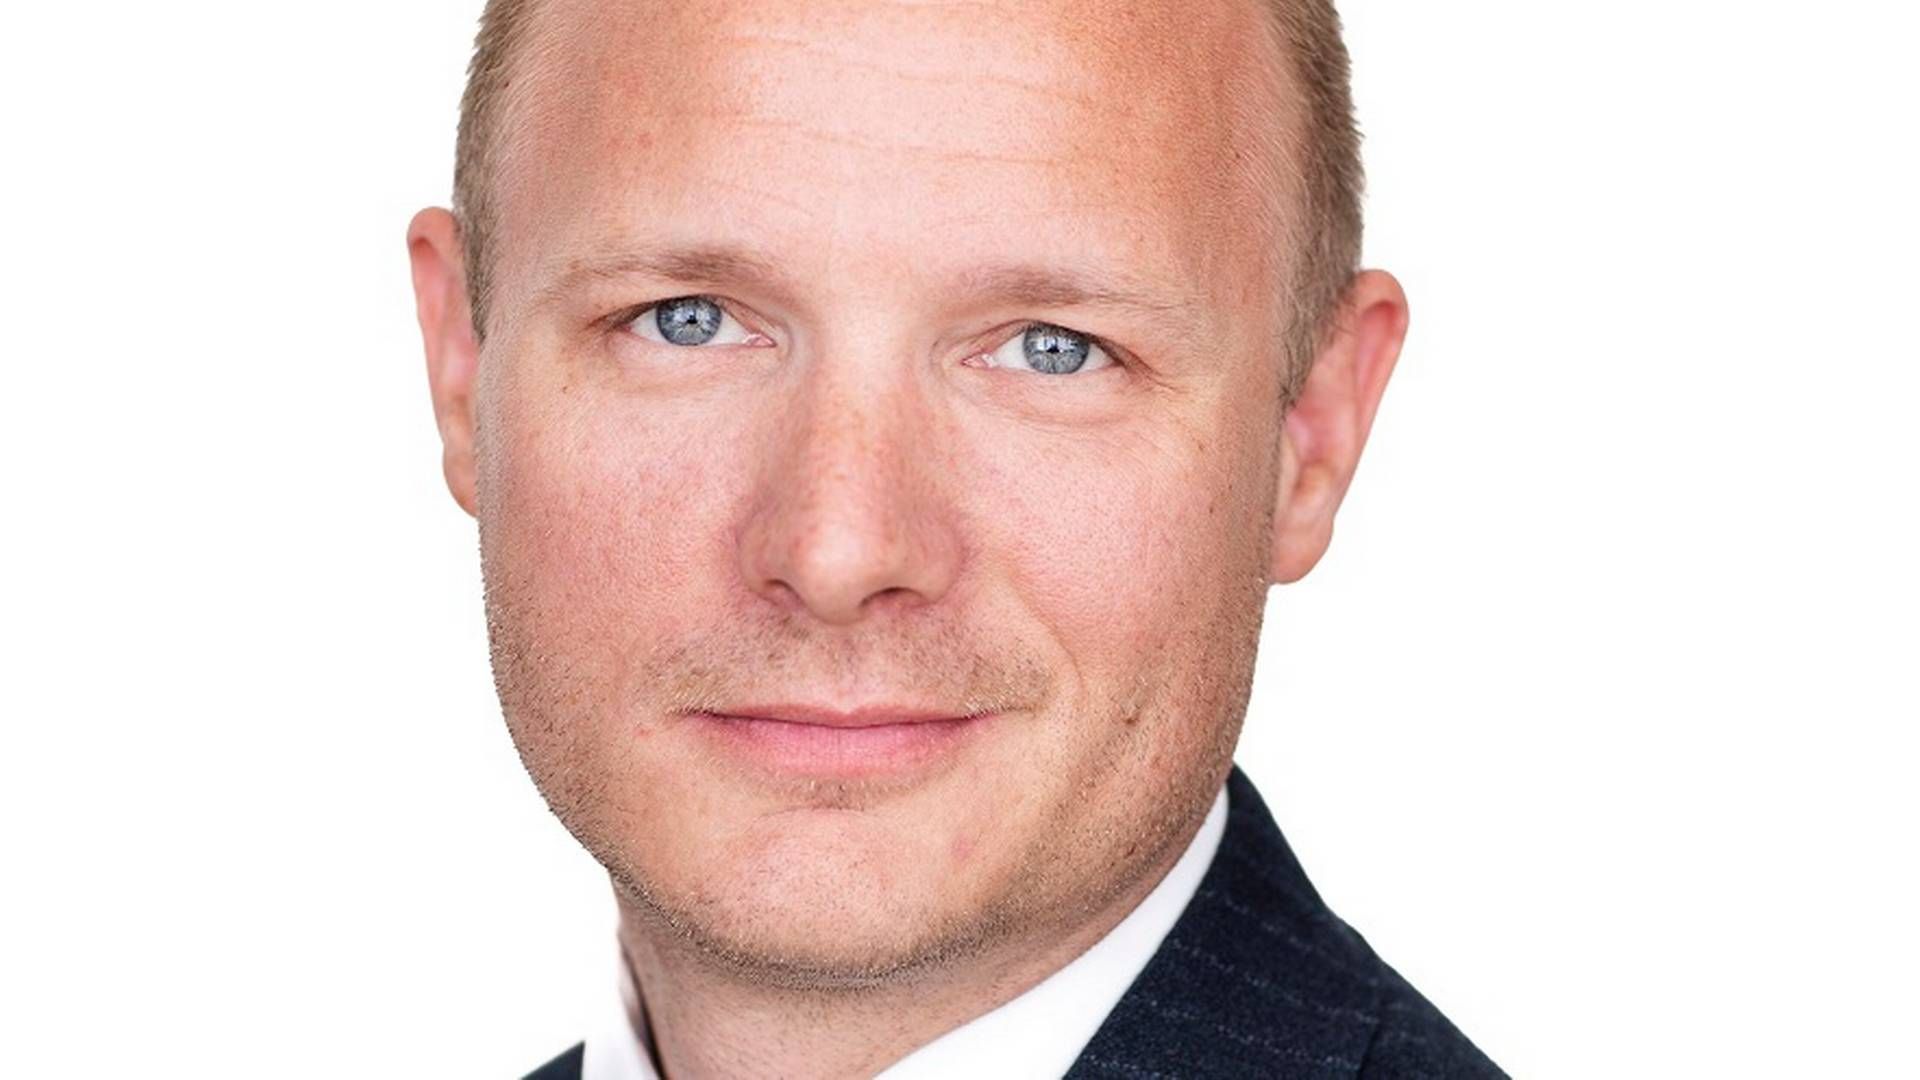 39-årige Morten Jarlbæk Pedersen startede 1. juli som ny analysechef hos DSK. | Foto: Dsk/pr